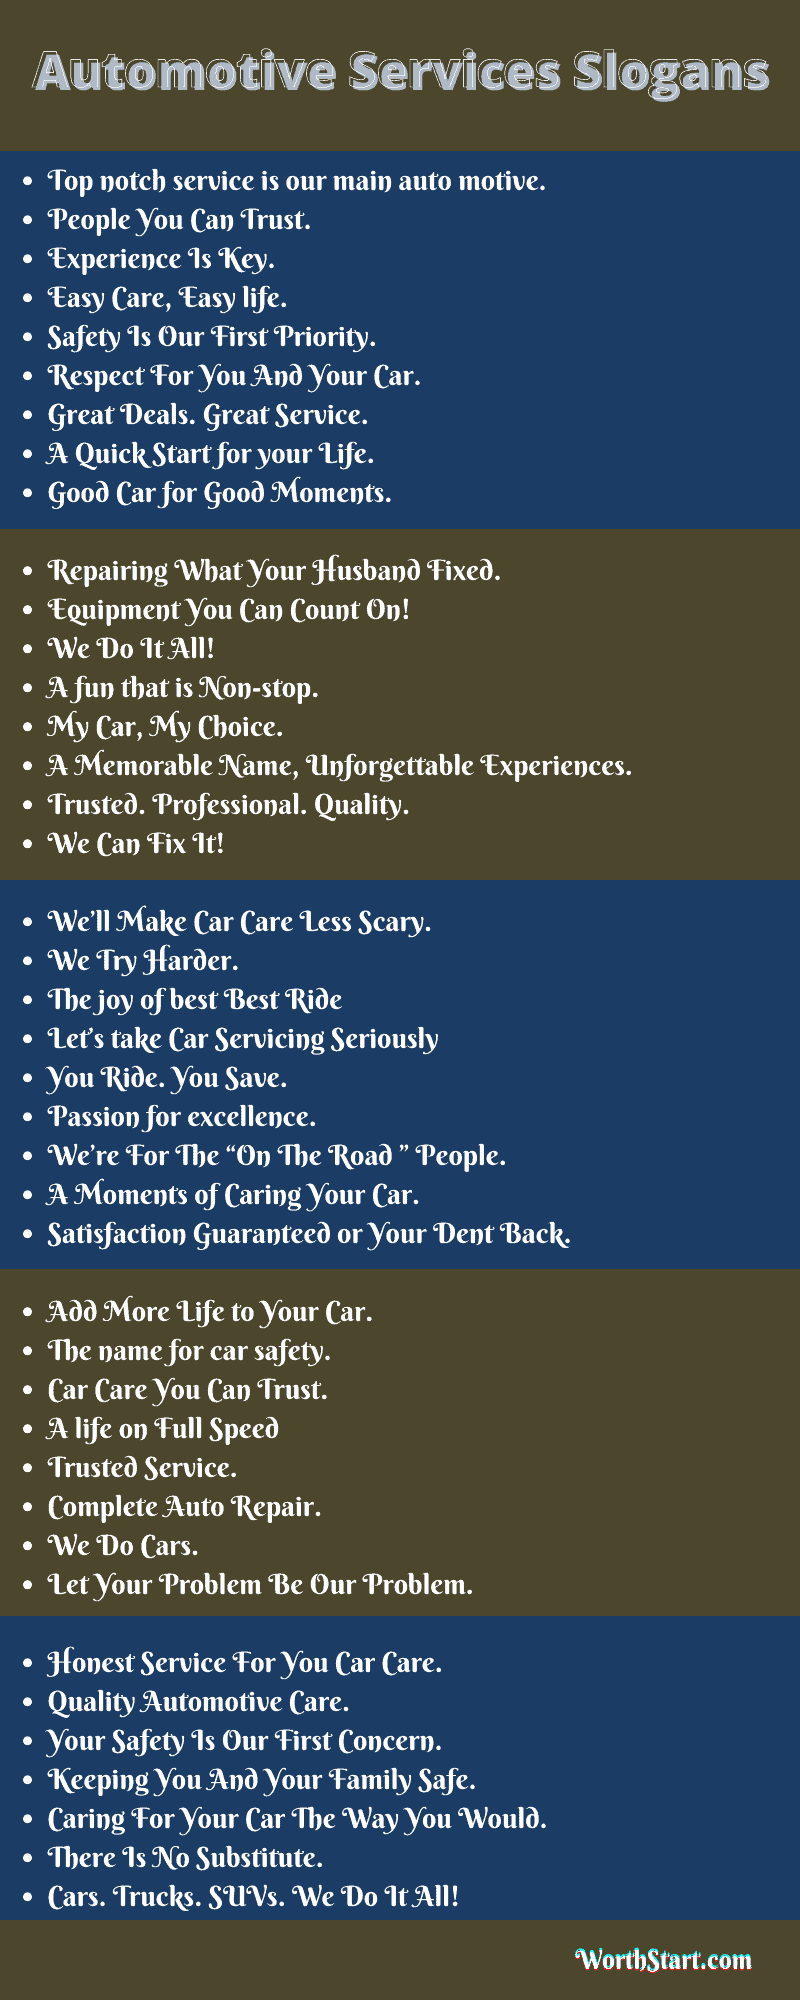 Automotive Services Slogans